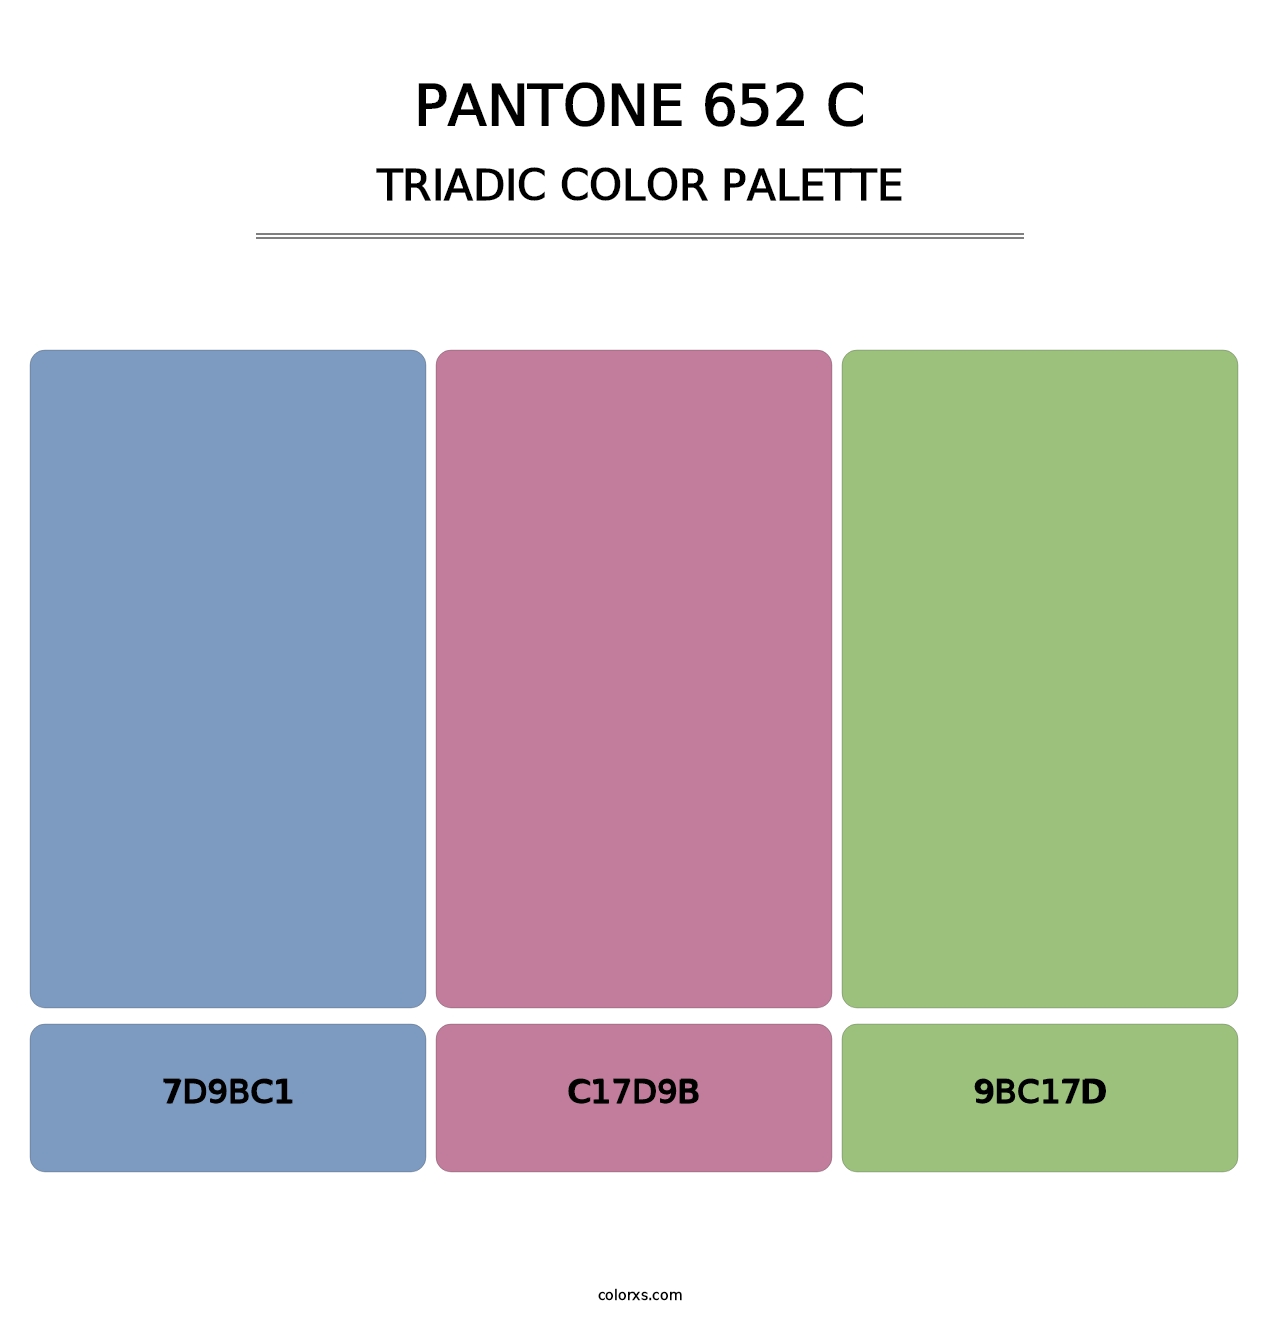 PANTONE 652 C - Triadic Color Palette